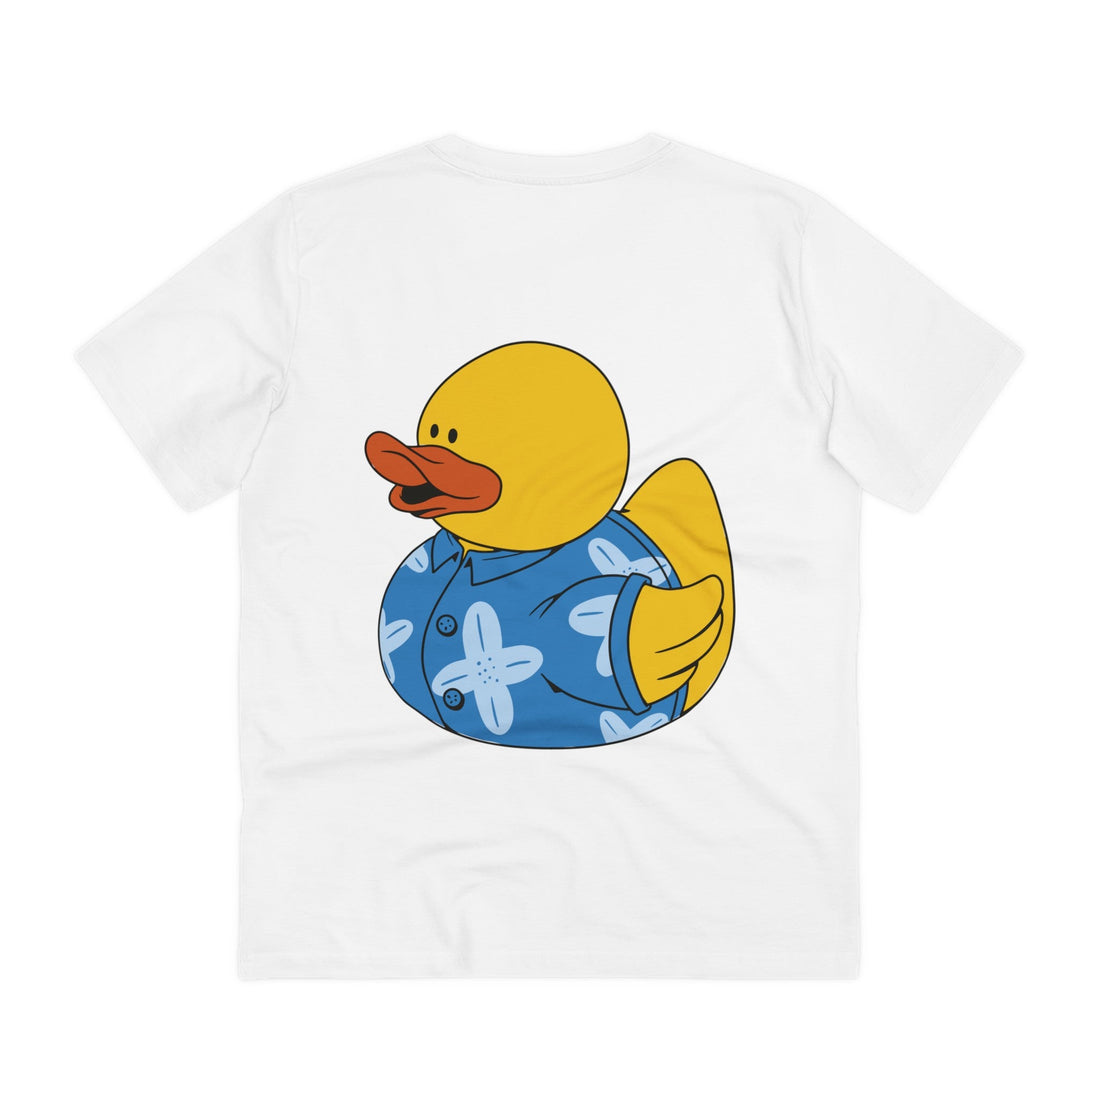 Printify T-Shirt White / 2XS Hawaiian Shirt - Rubber Duck - Back Design